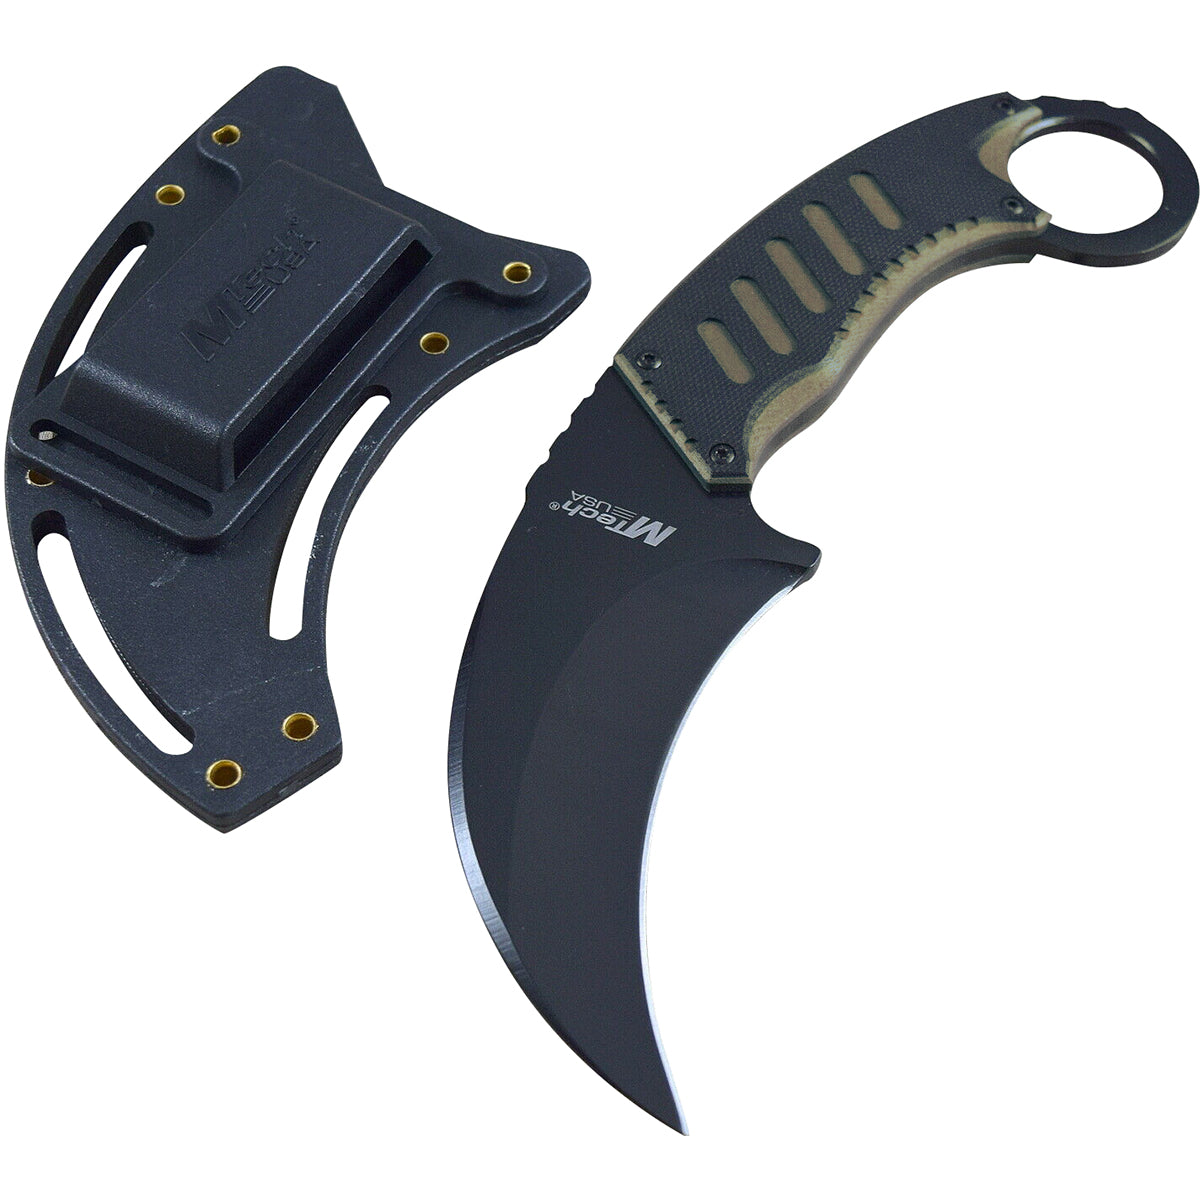 MTech USA Tactical Karambit Fixed Blade Neck Knife, G10, Black/Tan, MT-665BT MTech USA